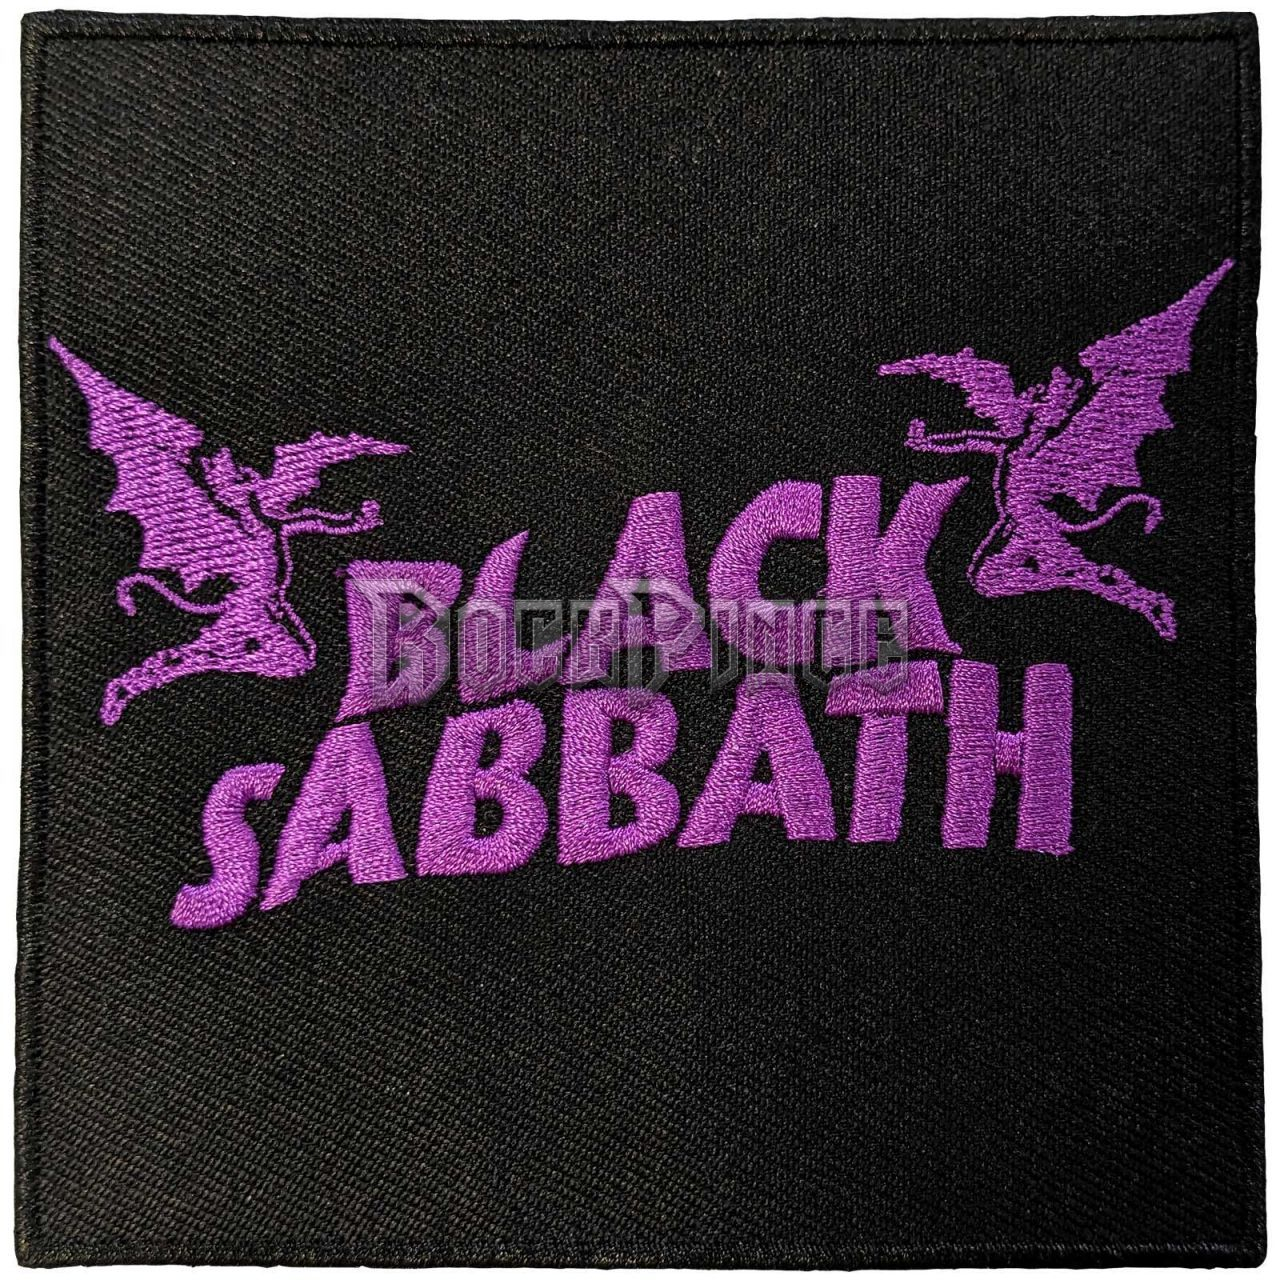 Black Sabbath - Wavy Logo & Daemons - kisfelvarró - BSPAT06